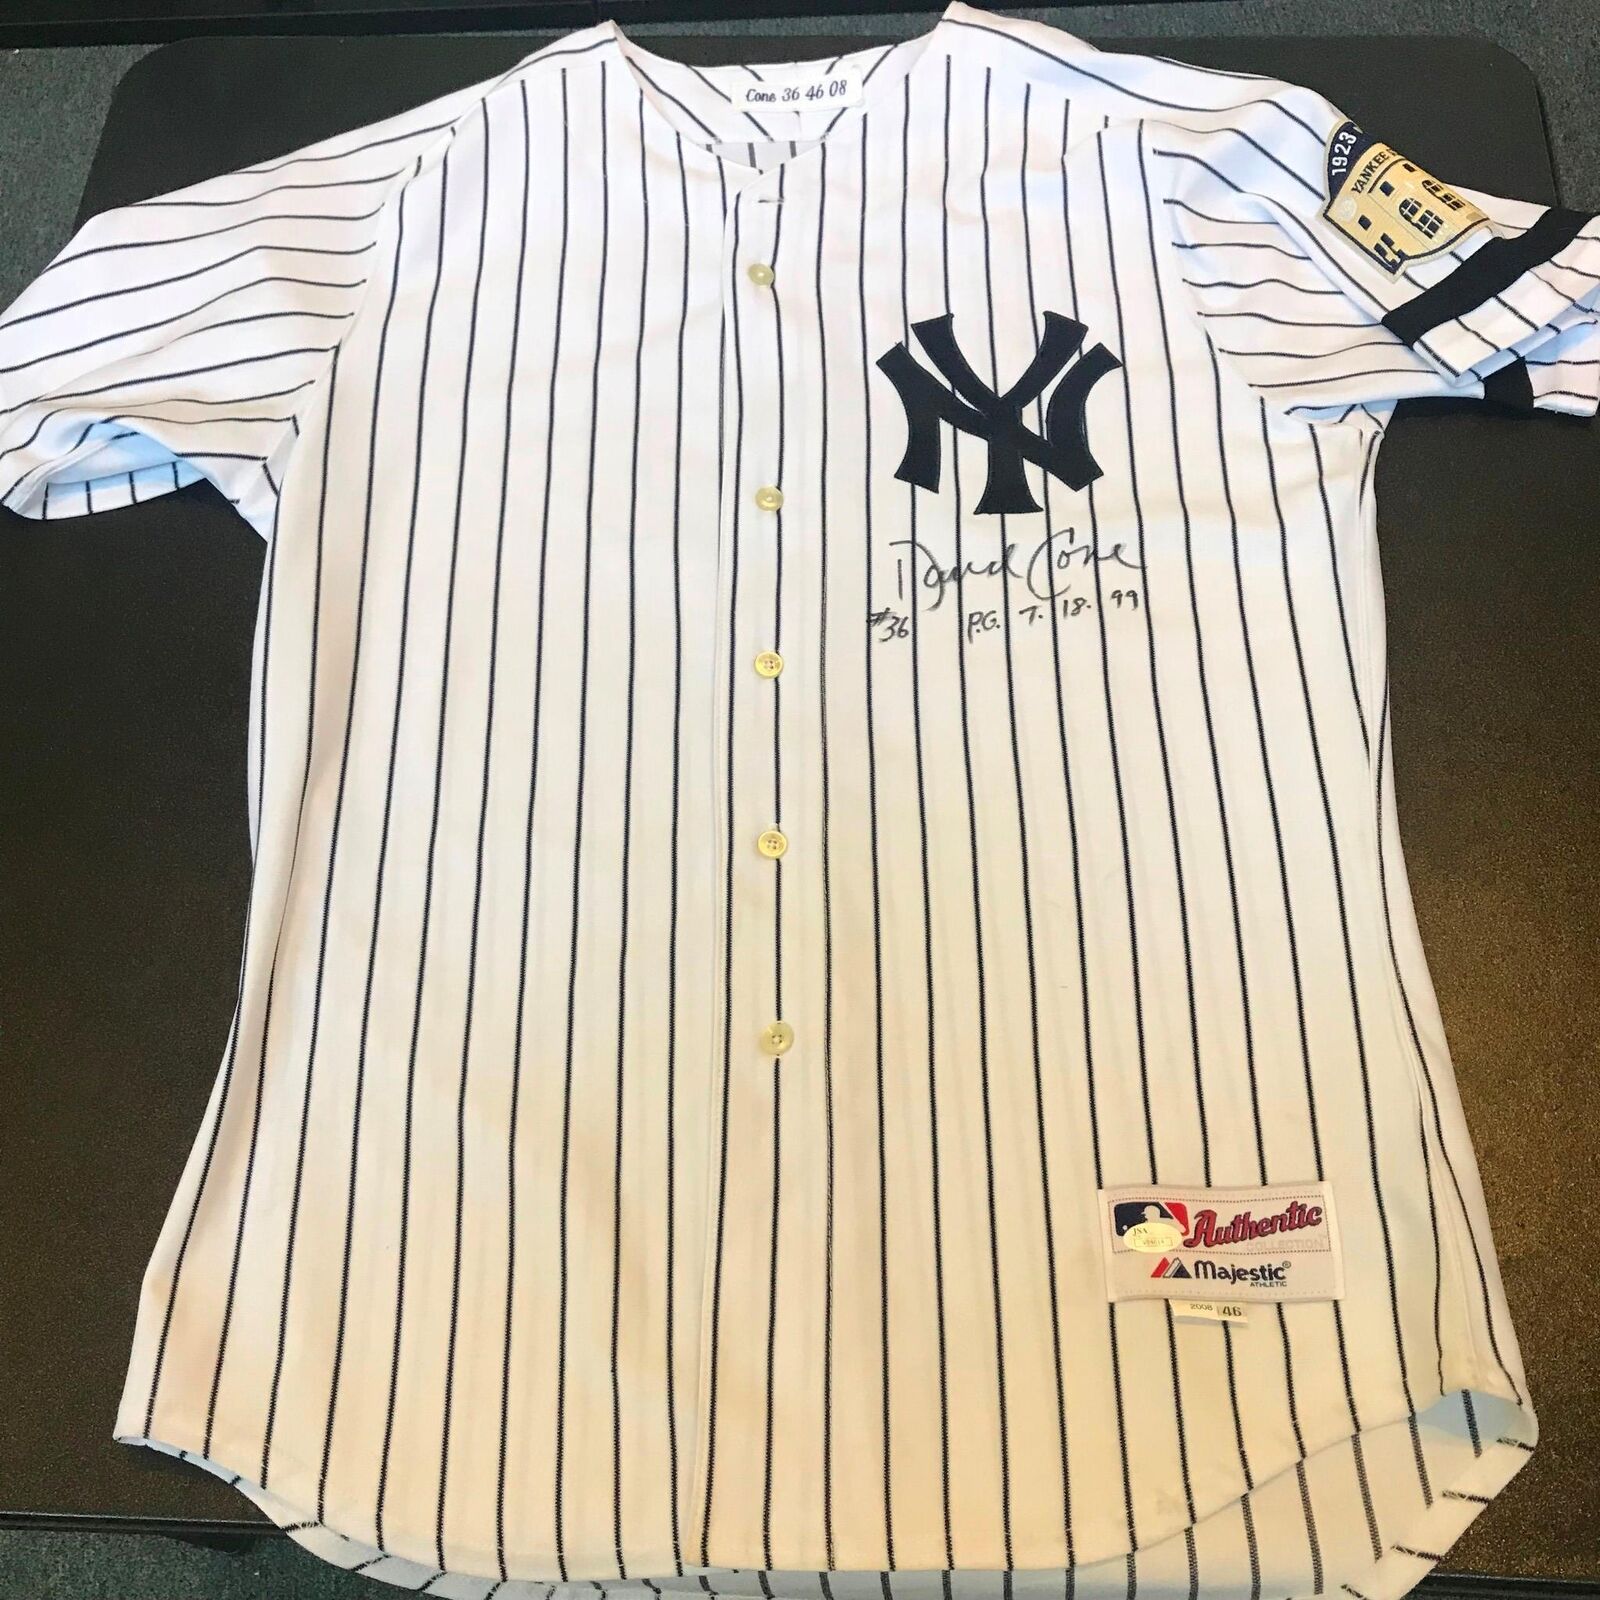 Whitey Ford Signed NY Yankees Majestic Authentic Baseball Jersey